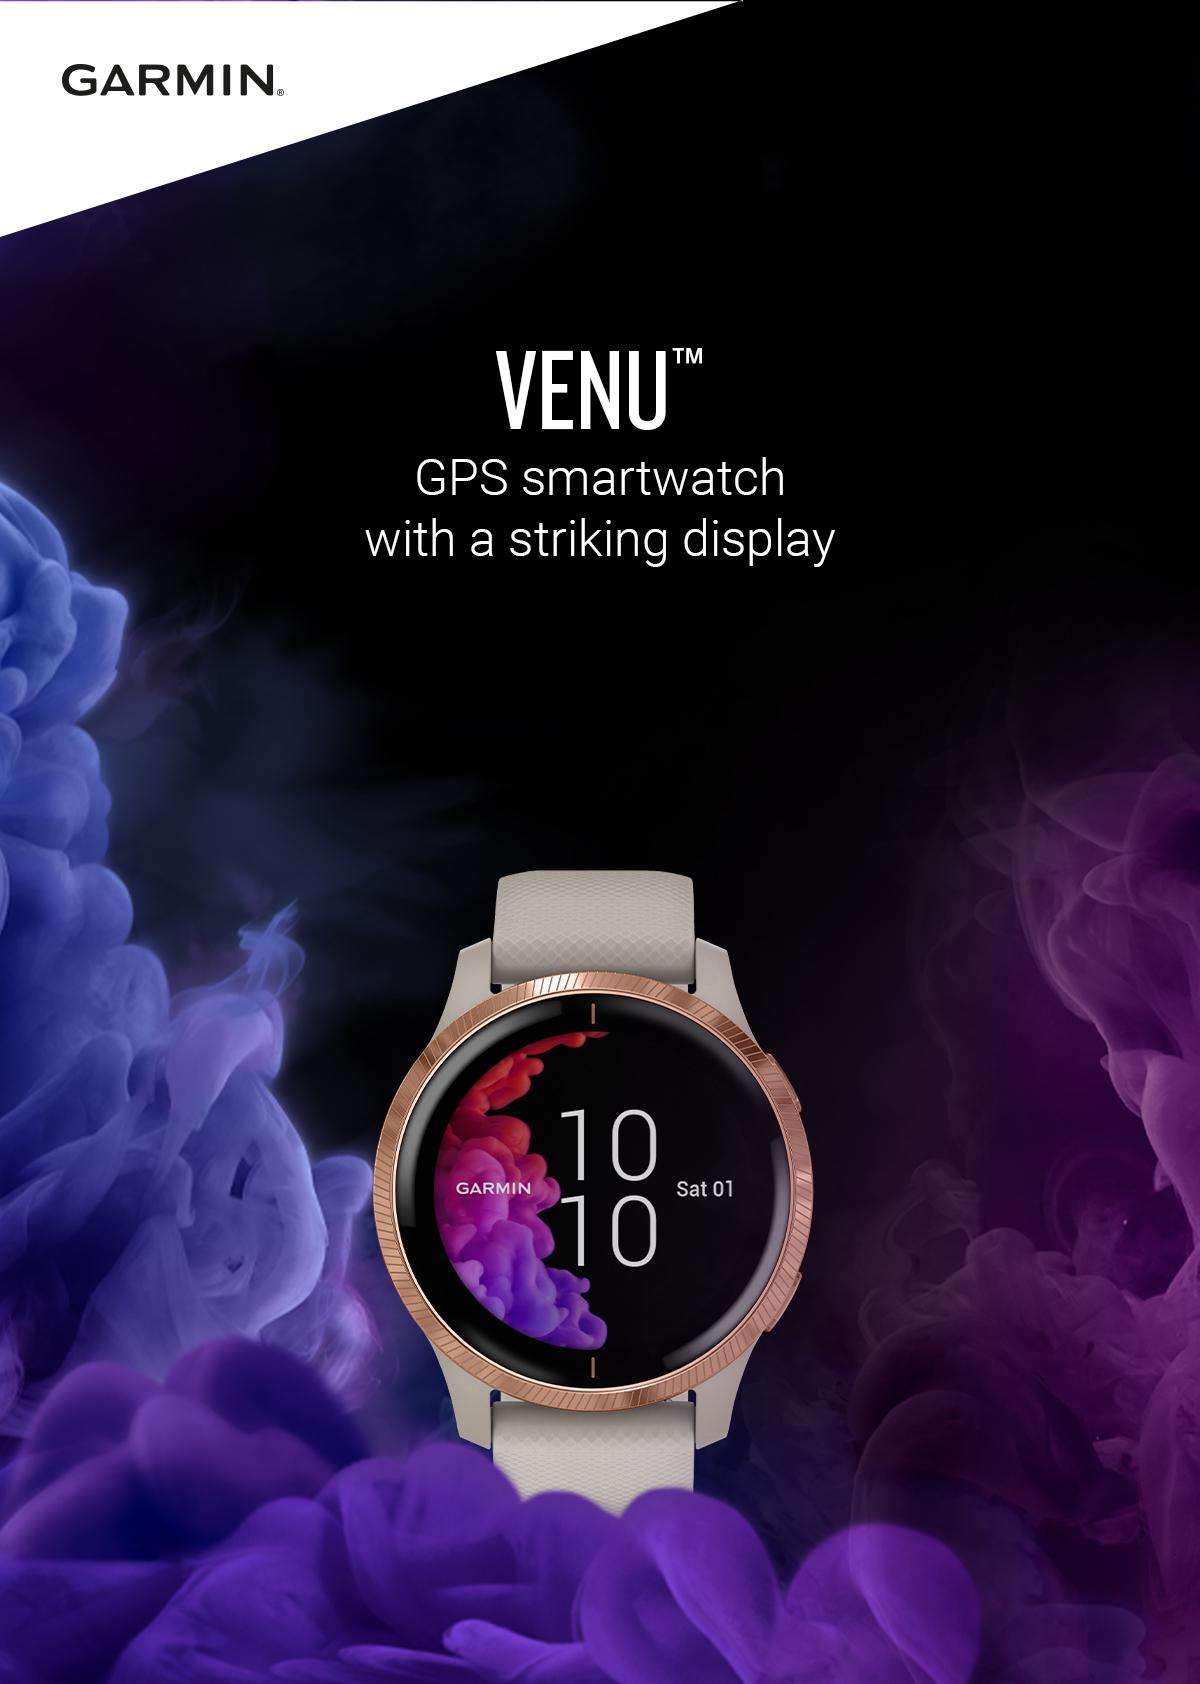 Garmin Grey watch on Purple backdrop